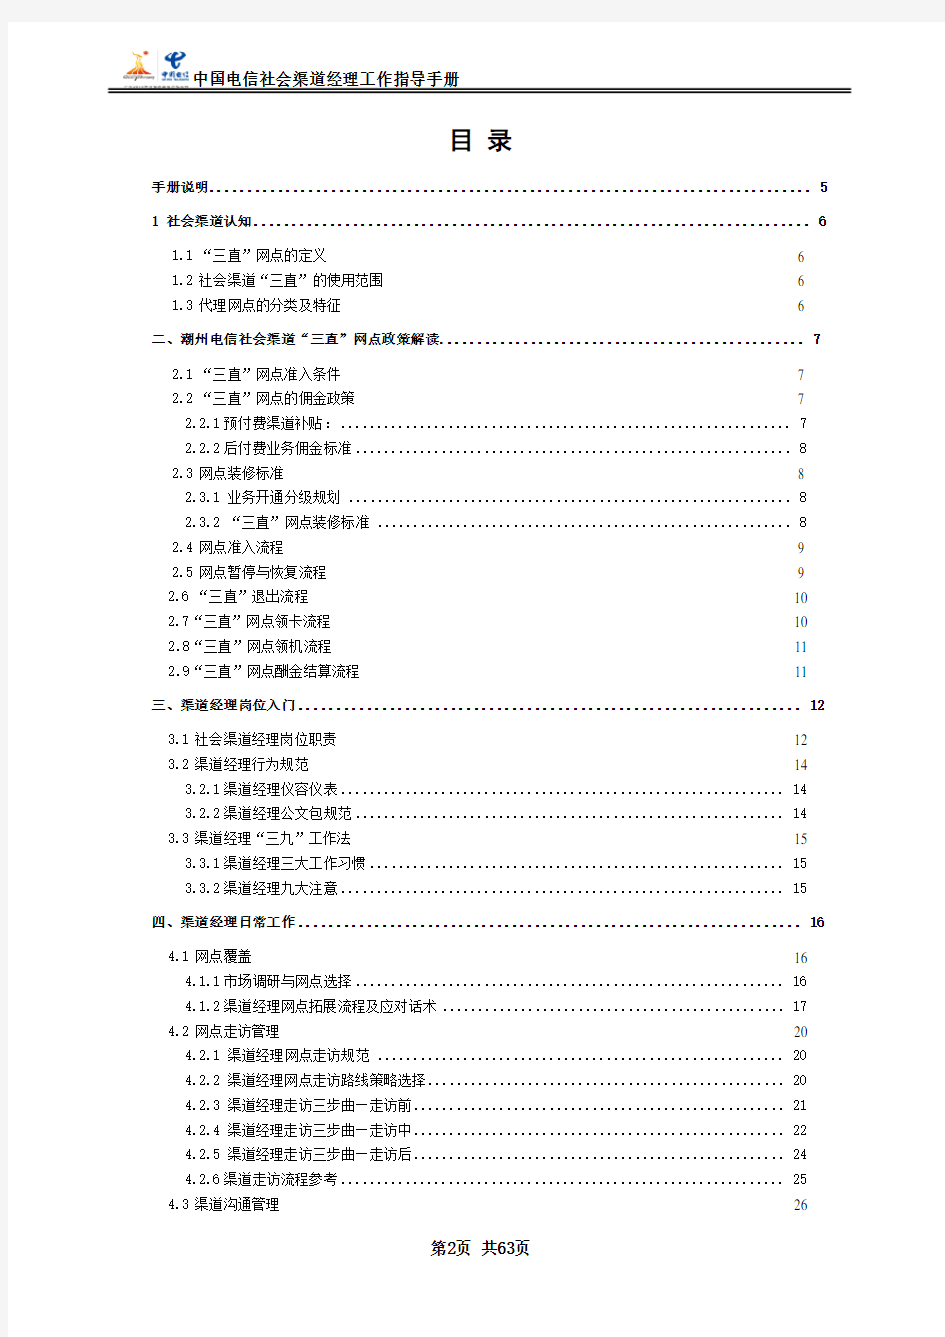 中国电信社会渠道经理工作手册